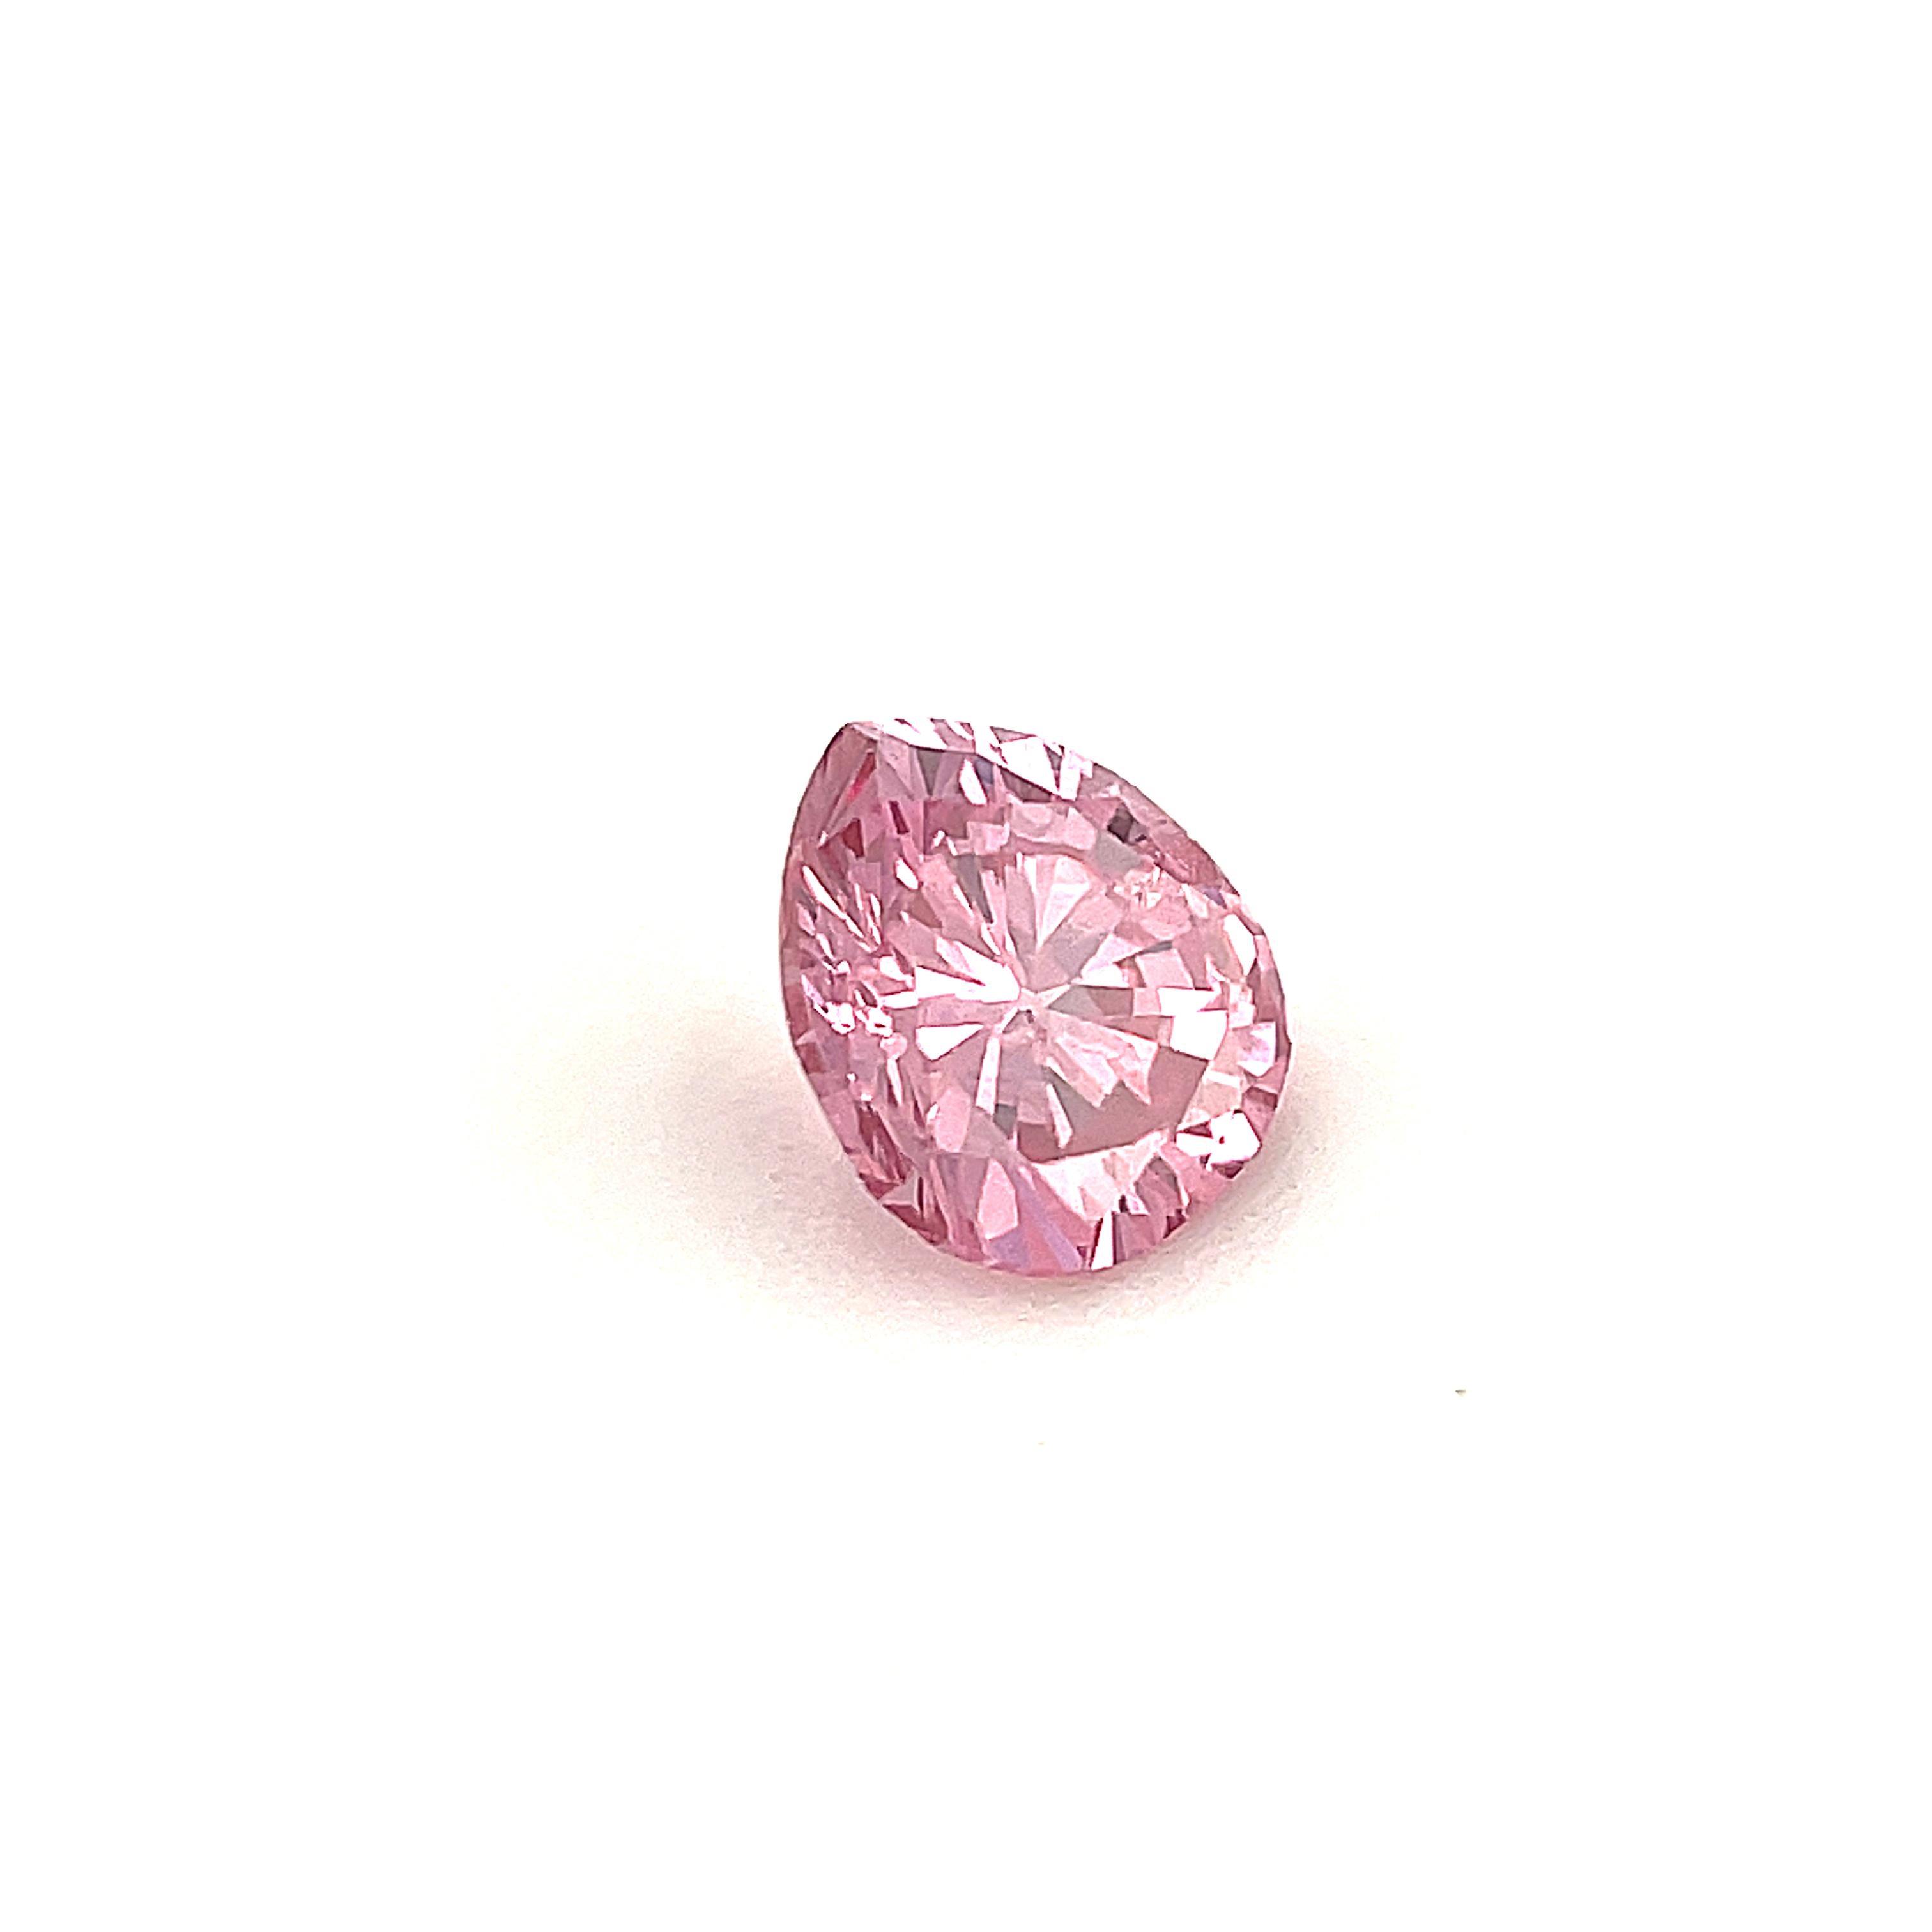 24 carat pink diamond price